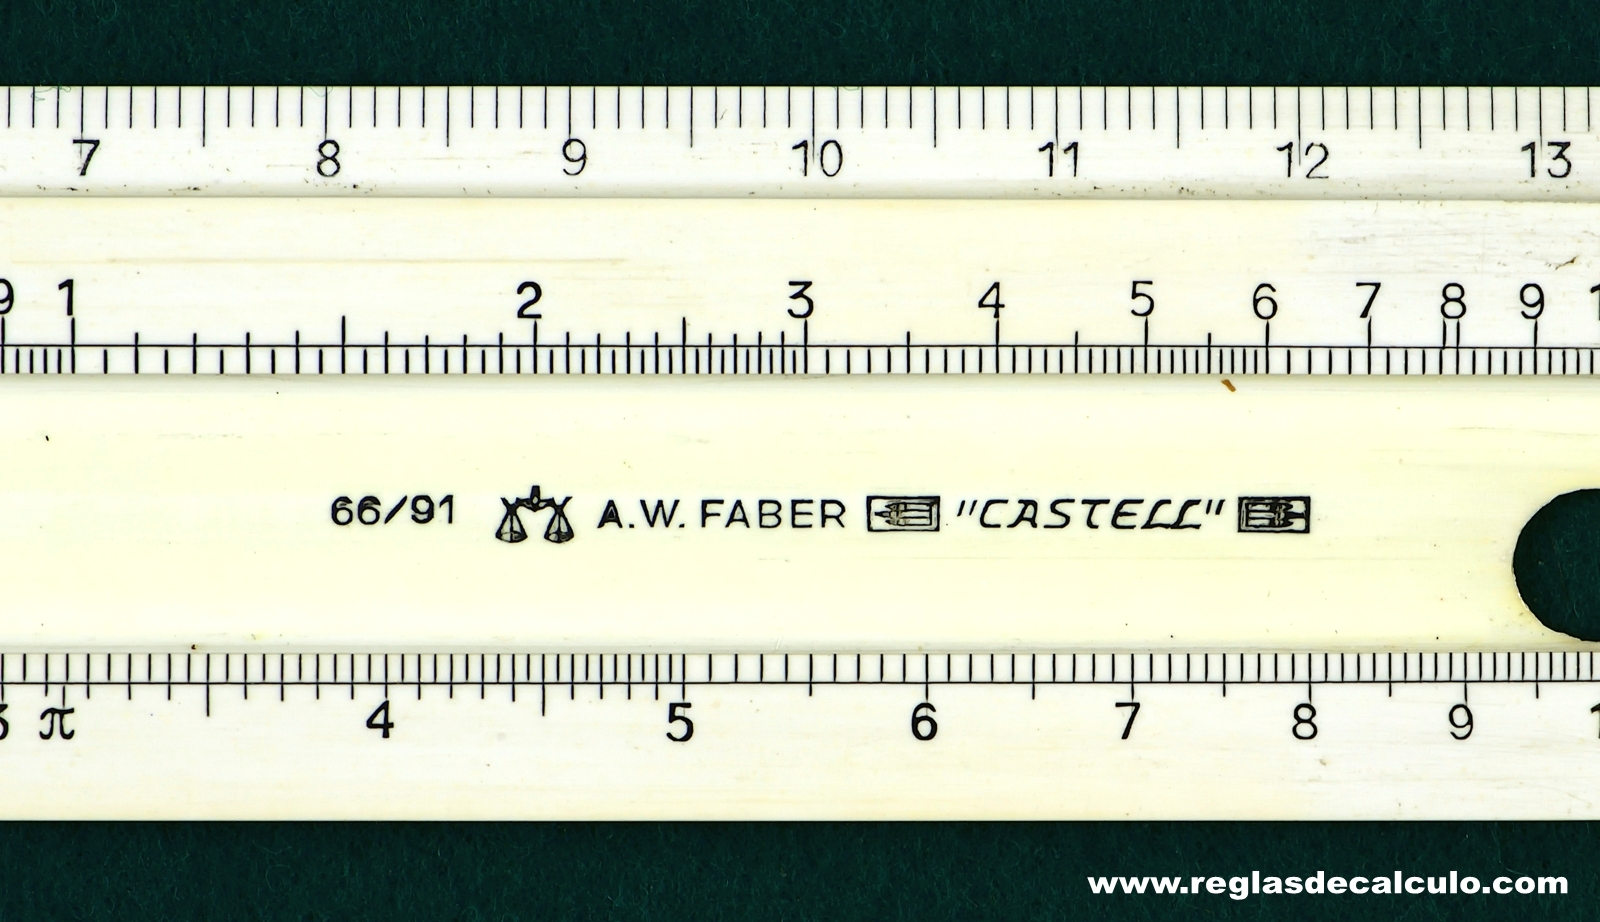 Faber Castell 66/91 Regla de Calculo Slide rule